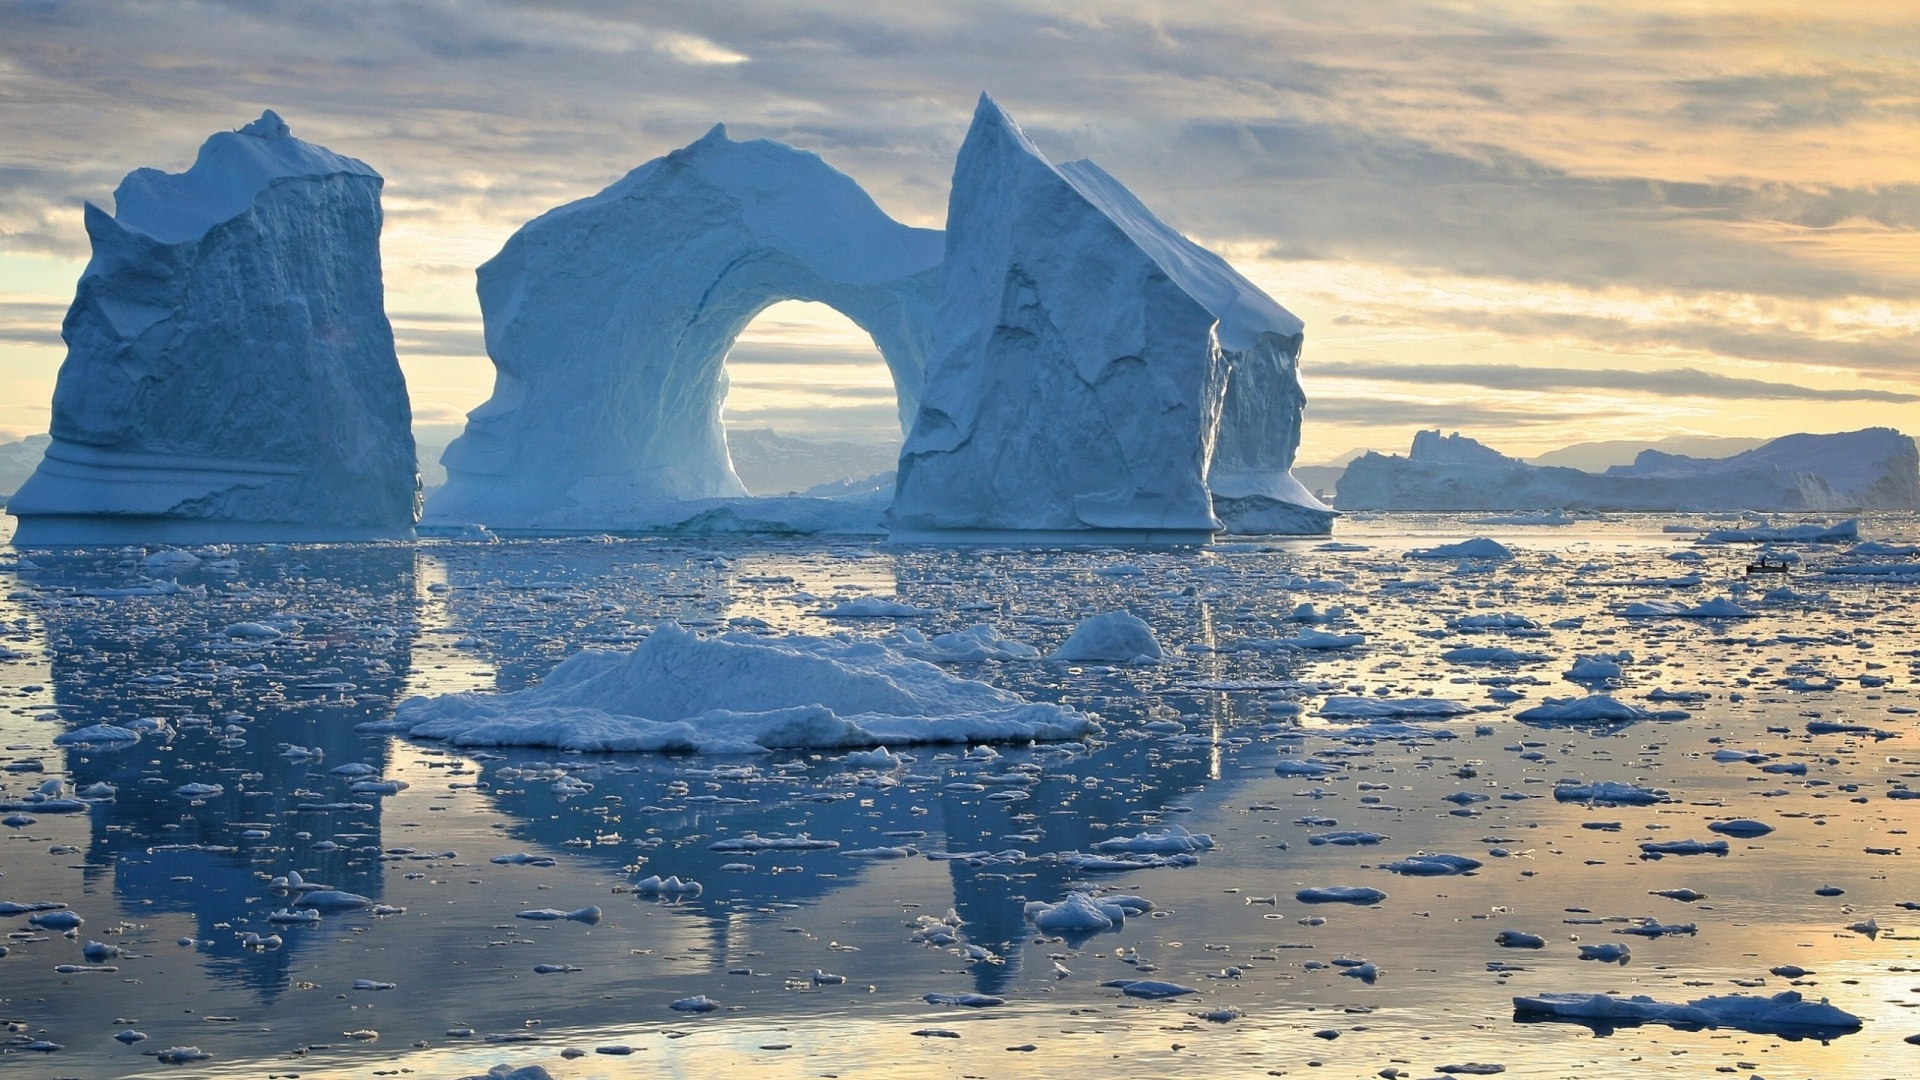 عکس پس زمینه با کیفیت بالا از  یخچال های طبیعی وسط اقیانوس 